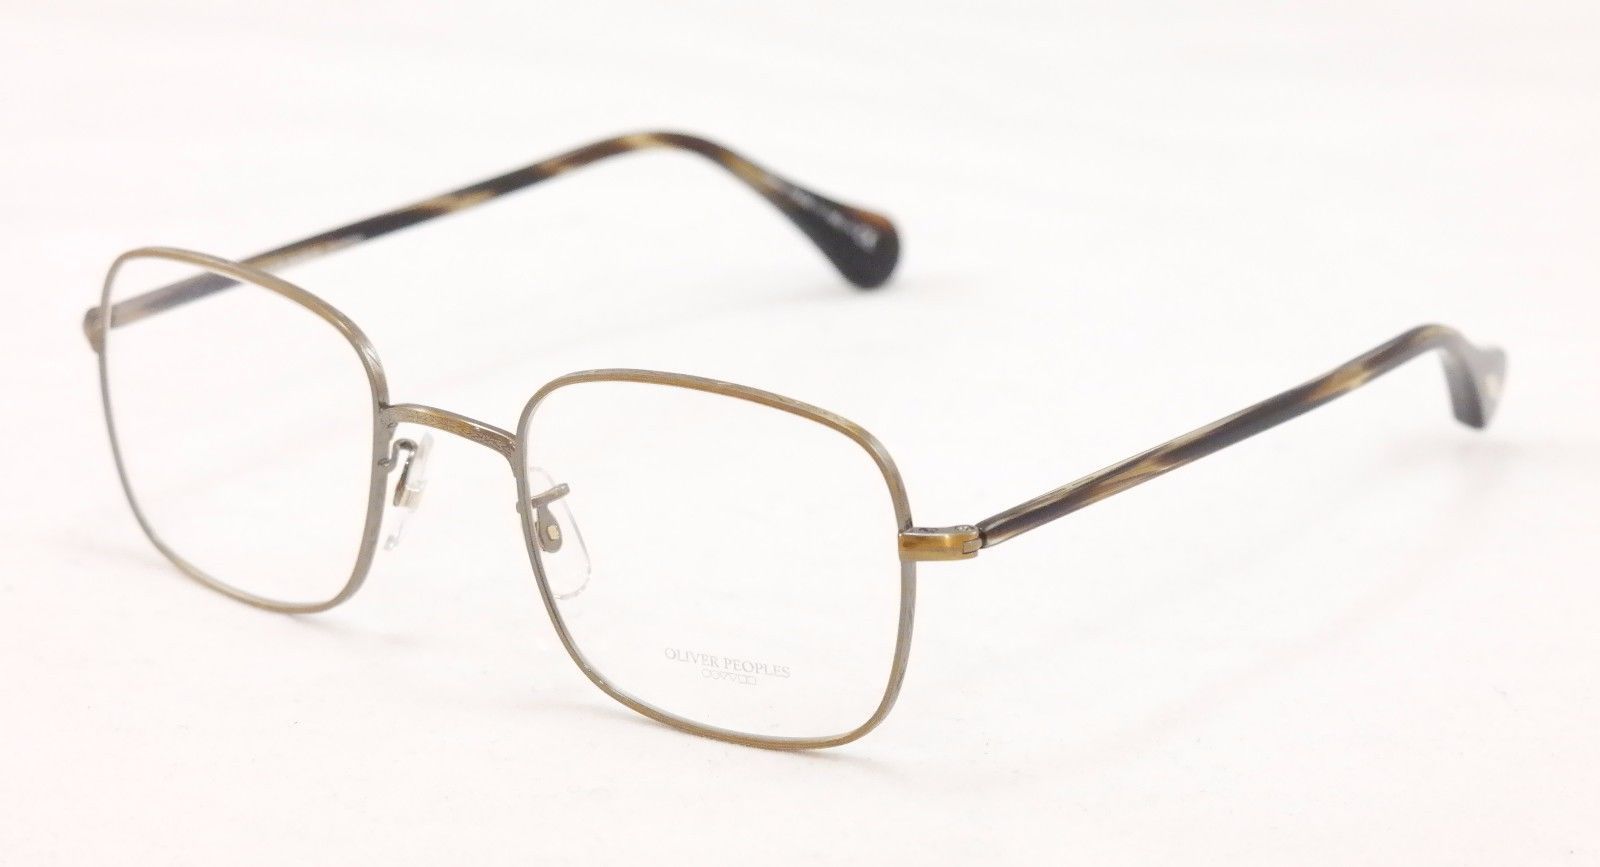 Authentic Oliver Peoples Eyeglasses Titanium OV1129T 5039 Redfield Antique Gold - $130.19